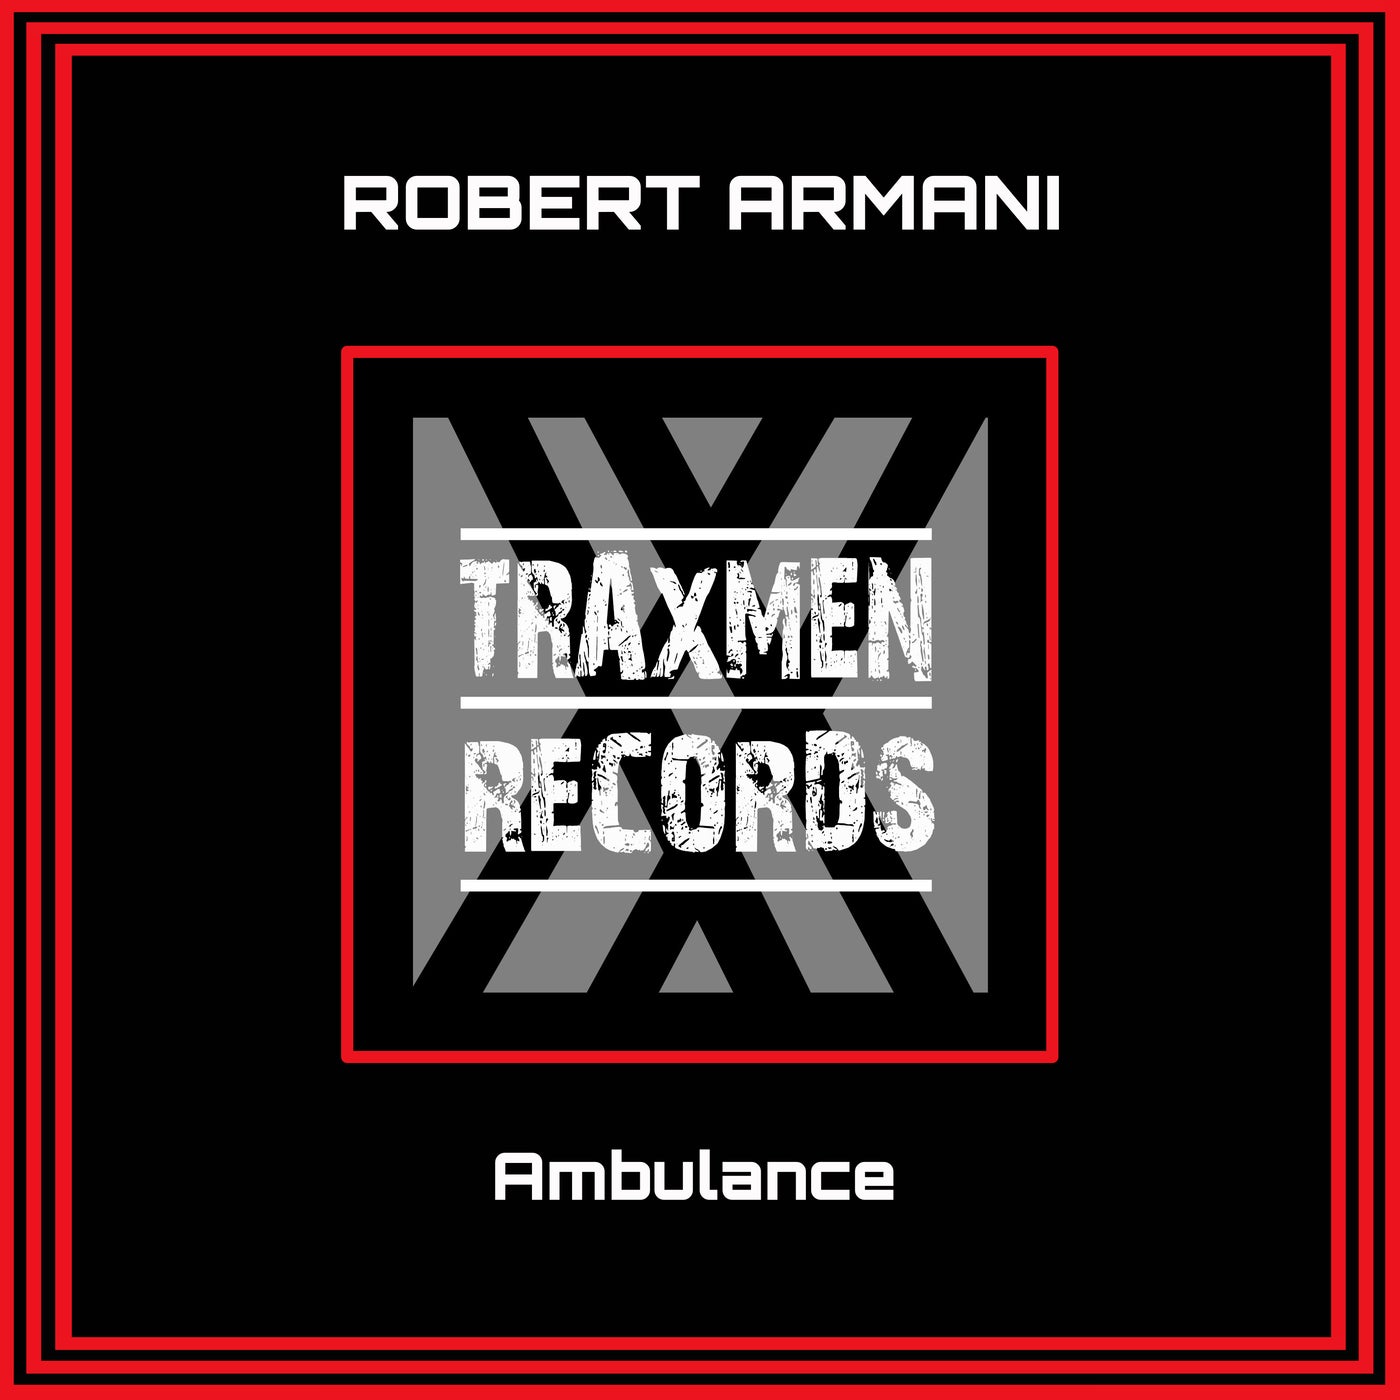 Ambulance (Original Mix) by Robert Armani on Beatport